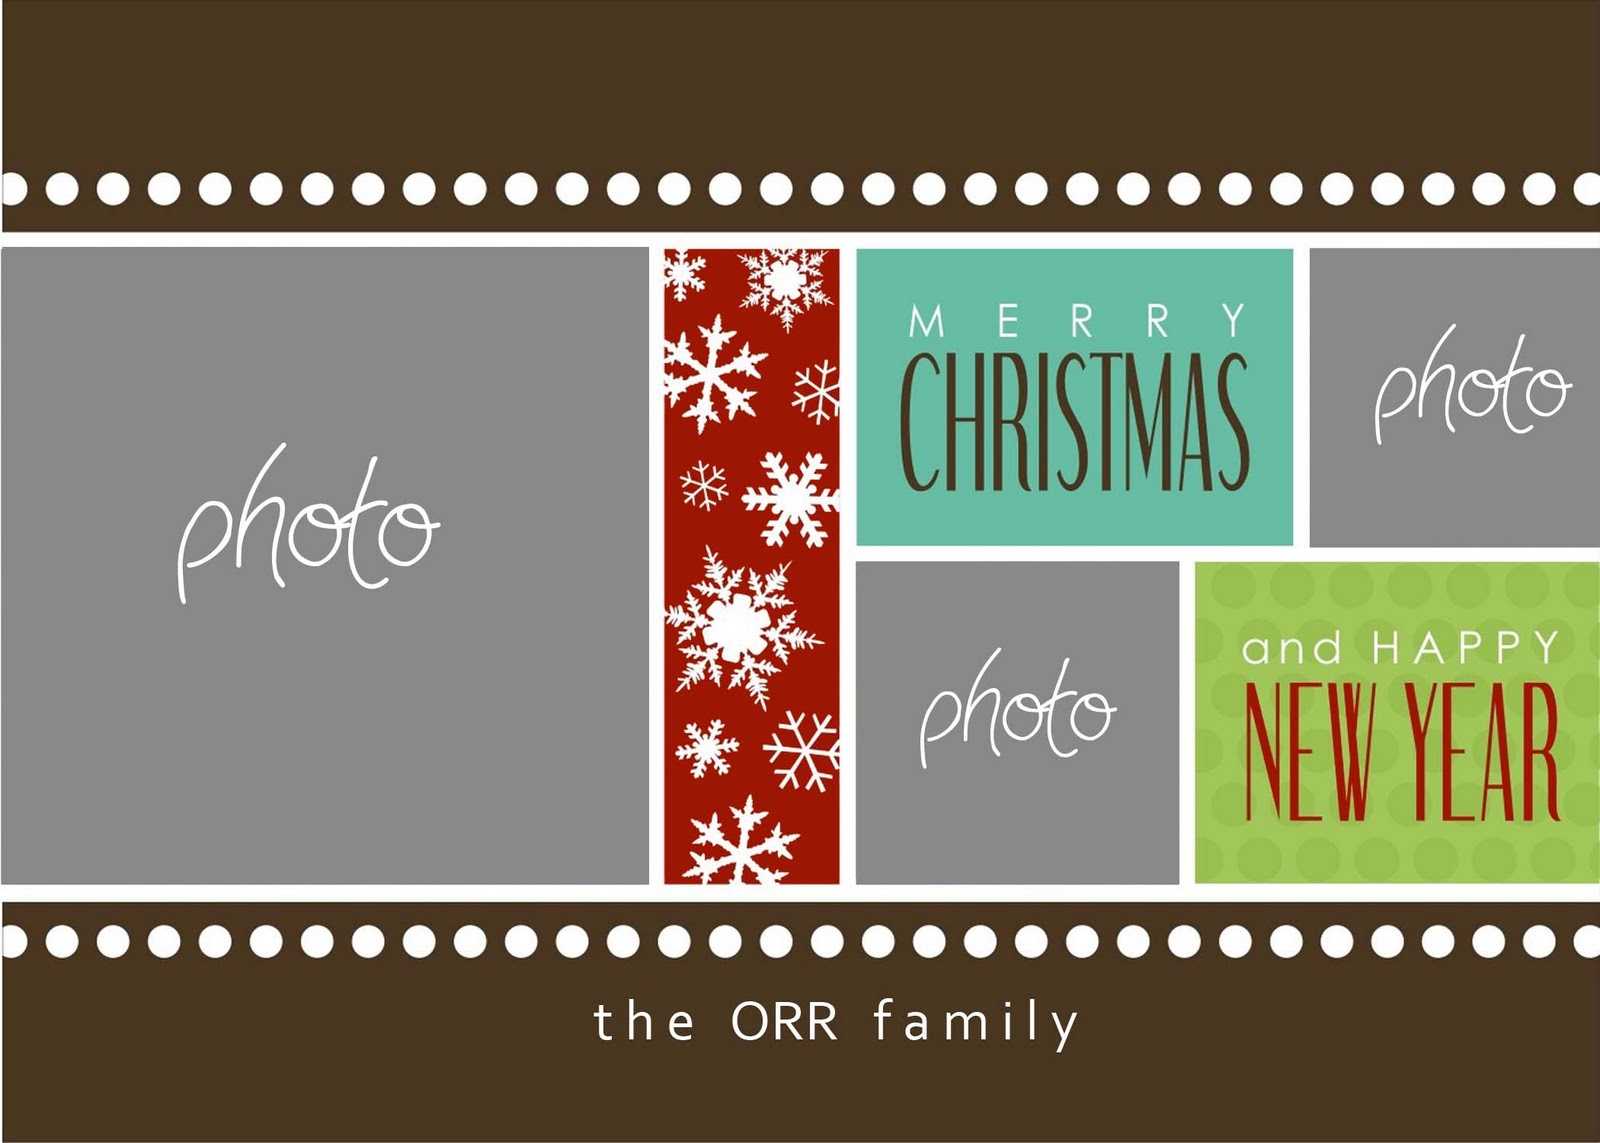 Christmas Cards Templates Photoshop ] – Christmas Card Regarding Free Christmas Card Templates For Photoshop